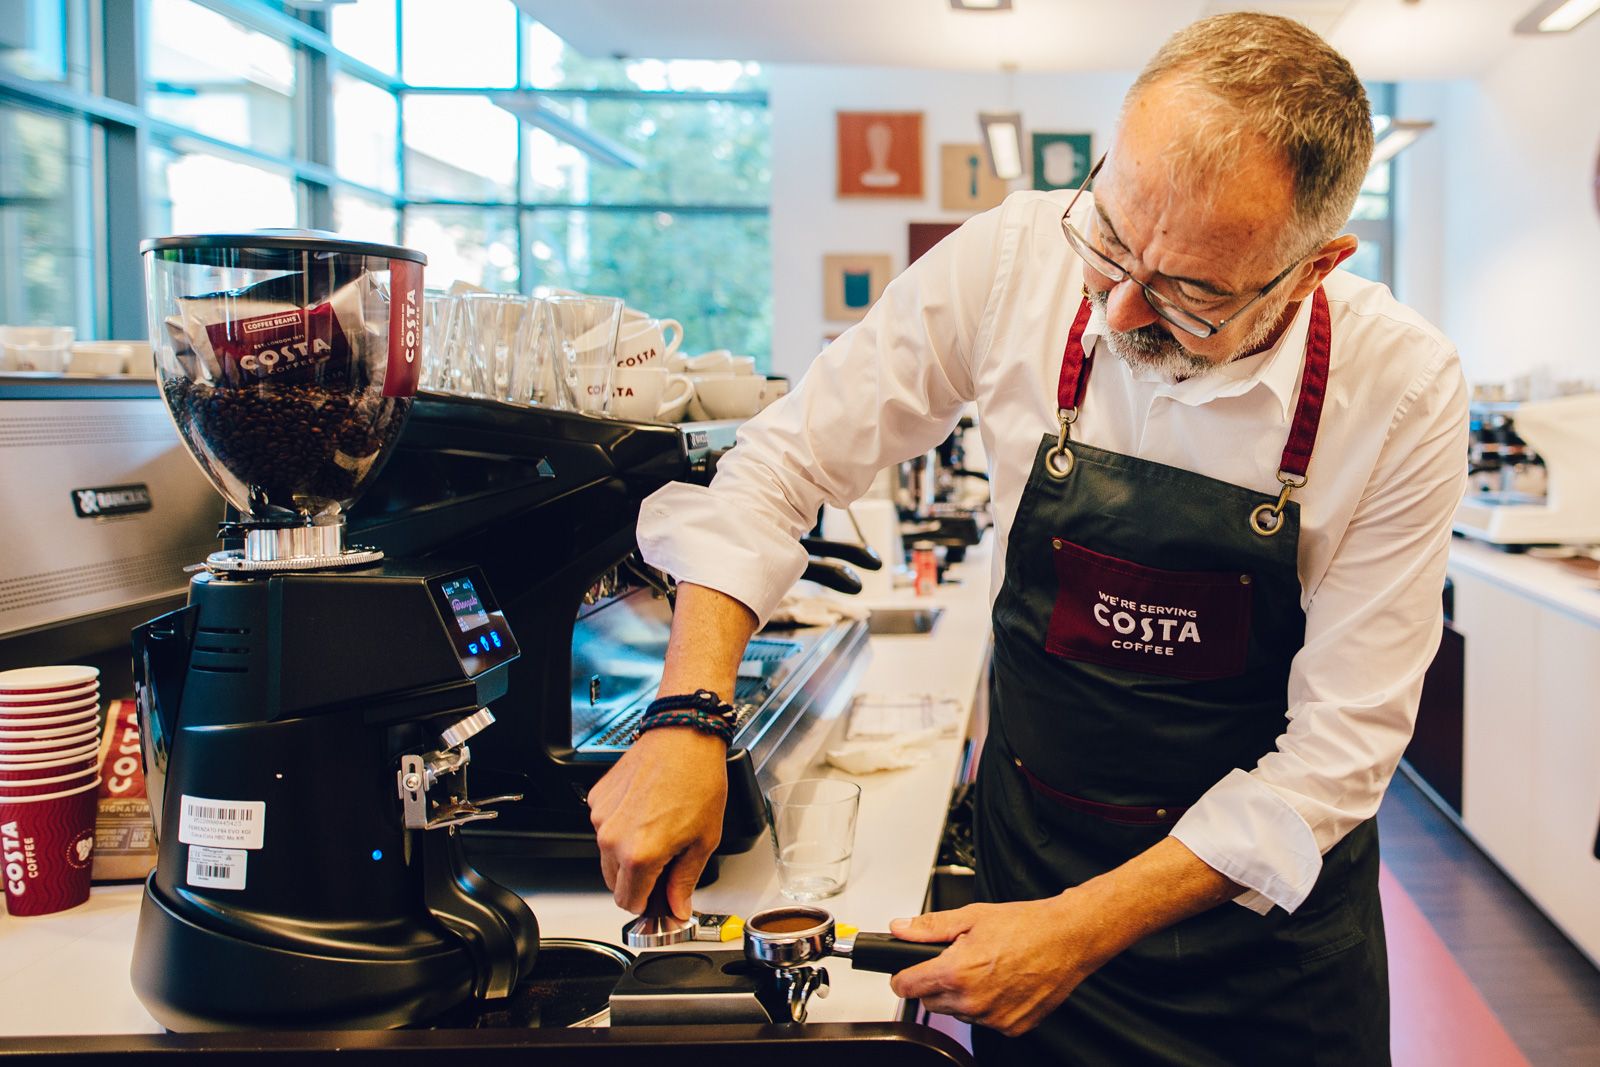 Folyamatosan bővülő kávépiacon készül nagy szeletet kiharapni a Costa Magyarországon